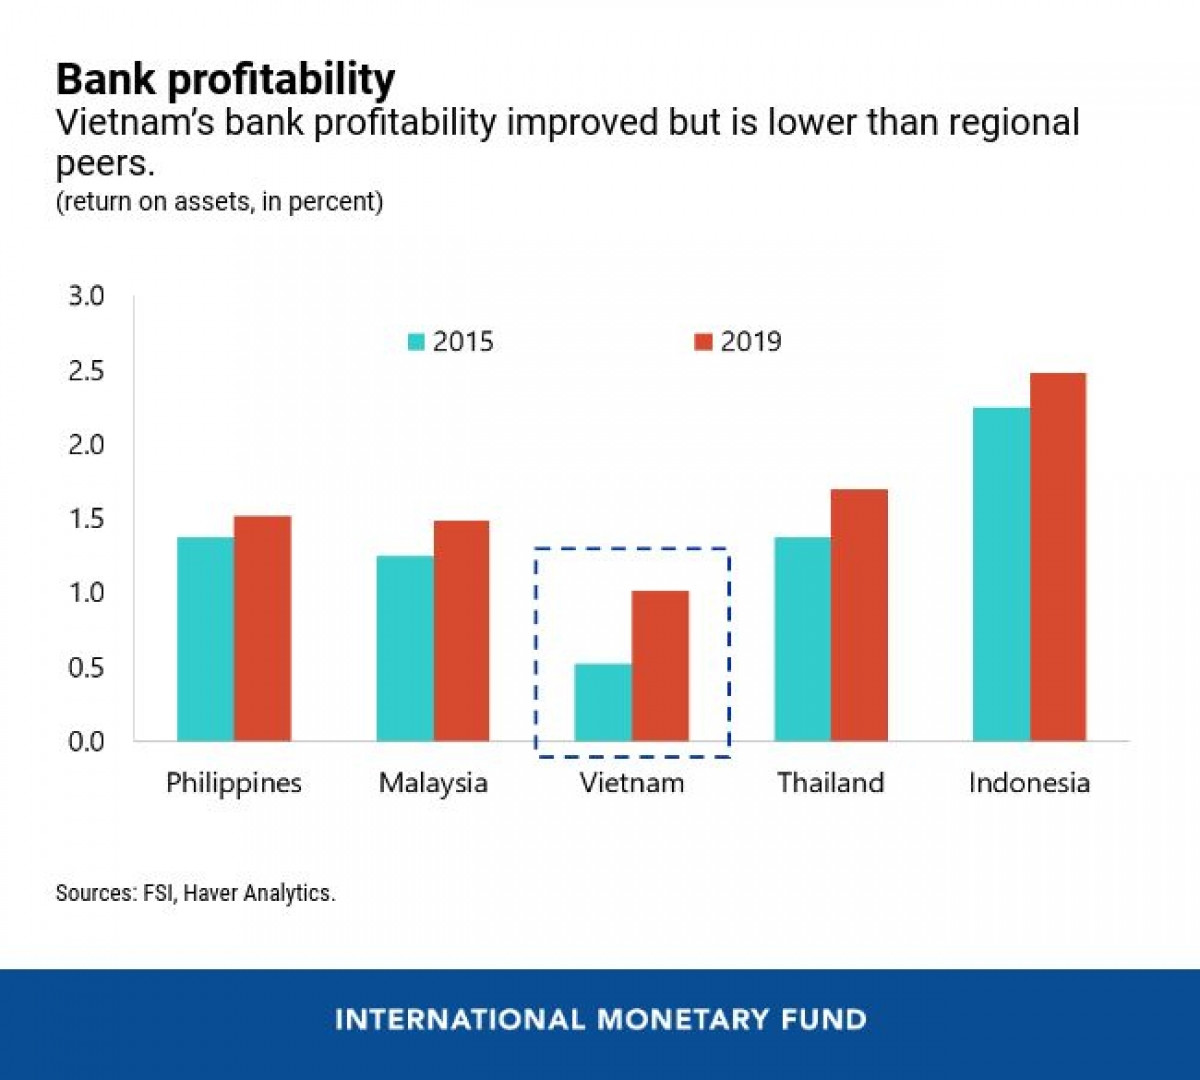 Lợi nhuận của ngành ngân hàng tăng trưởng tốt song vẫn thấp hơn các nước trong khu vực. (Nguồn: IMF)